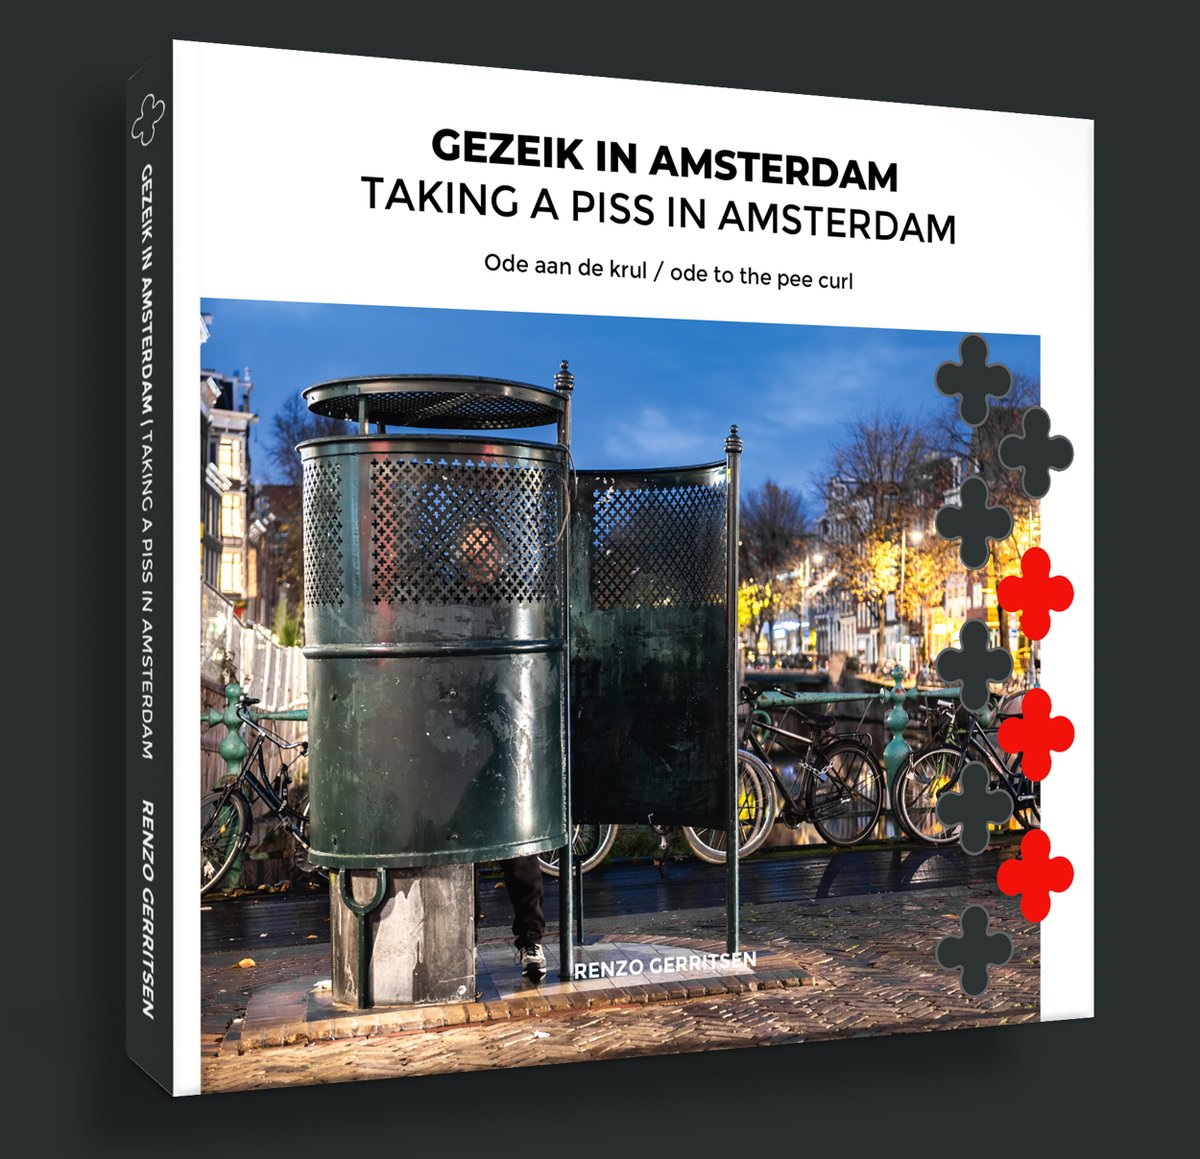 150 jaar oude Amsterdamse geschiedenis staat op het punt om uit het straatbeeld te verdwijnen. 😥 In mijn boek besteed ik hier aandacht aan. 

Bestel een exemplaar van 'Gezeik in Amsterdam - Ode aan de #plaskrul' ⬇️

plaskrulamsterdam.nl/plaskrul-boek-…